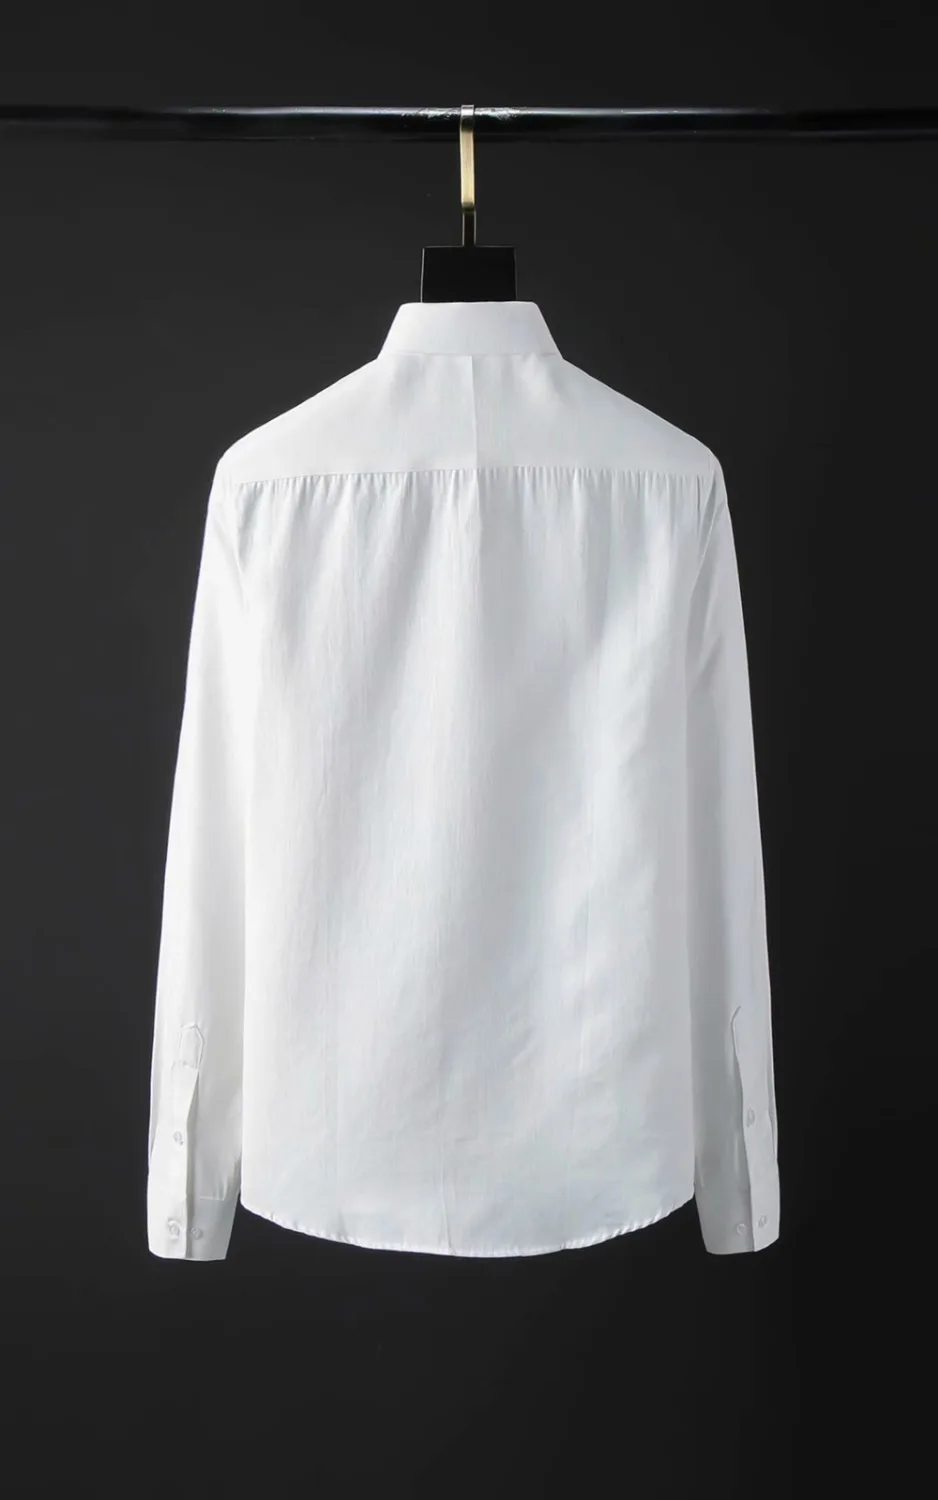 DUYOU Мужская льняная хлопковая рубашка мужская вышитая Корона пчелиное платье рубашка мужская Высококачественная приталенная Повседневная рубашка брендовая одежда DY2134